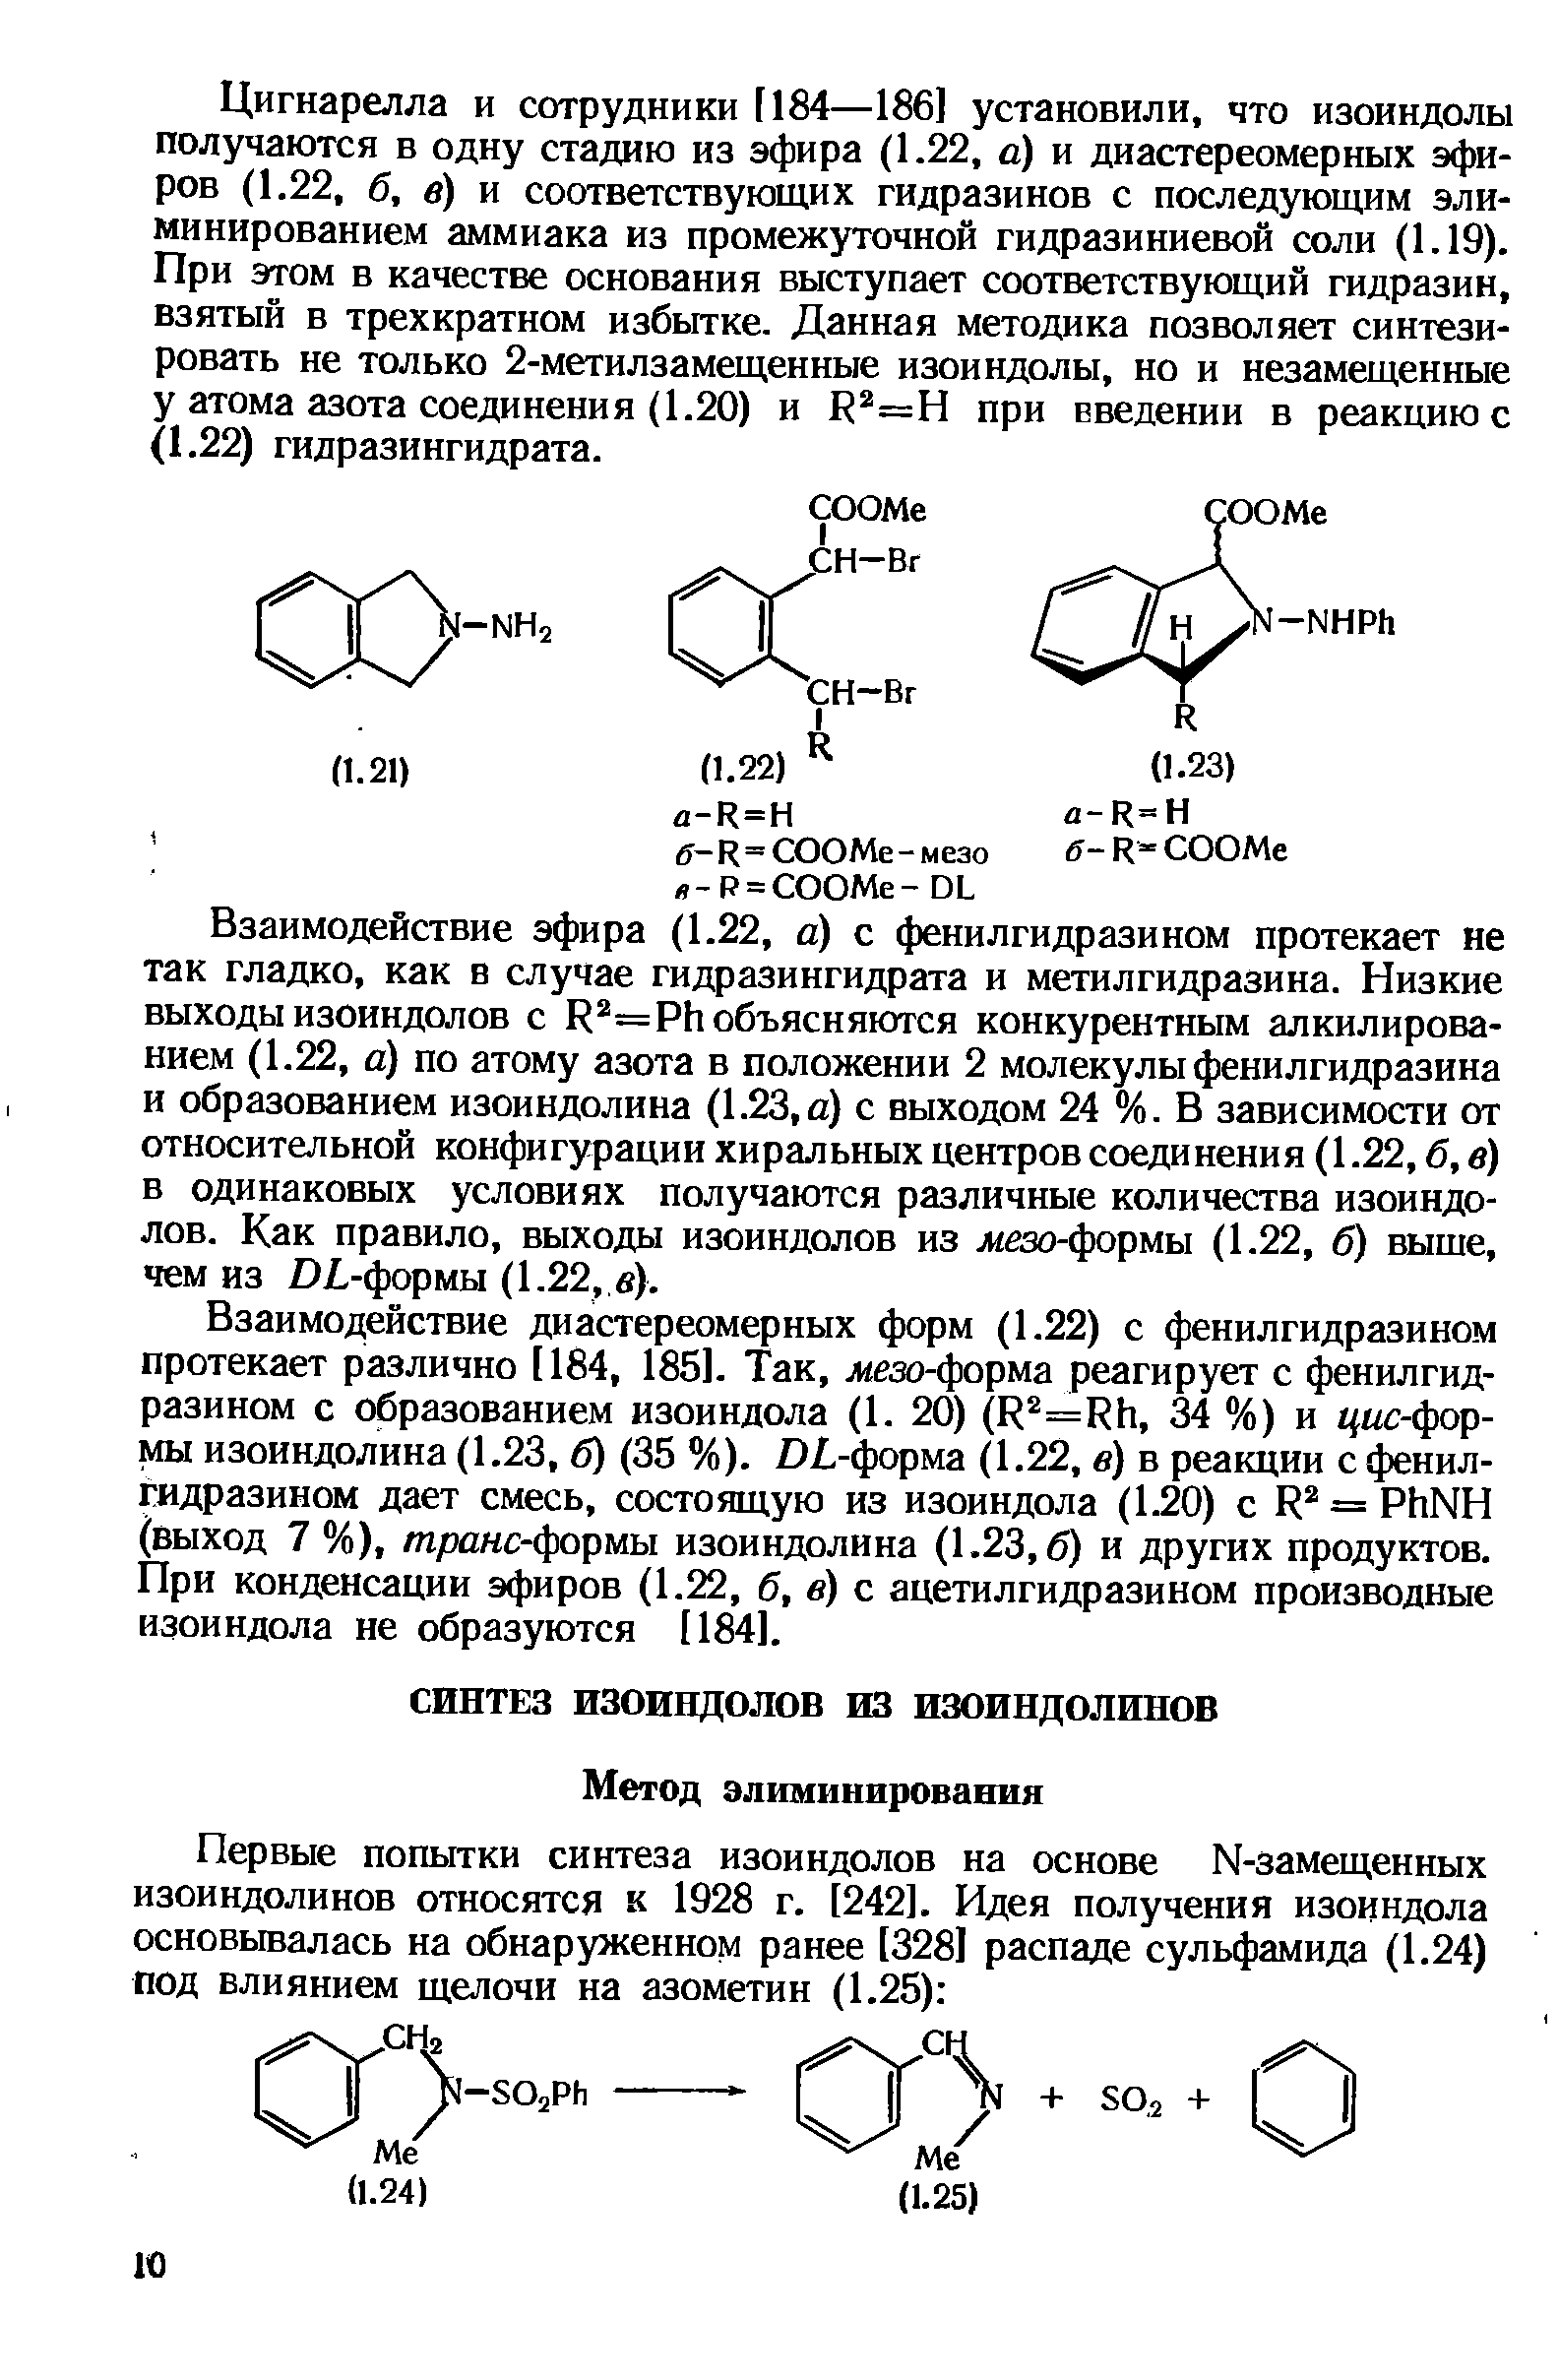 Взаимодействие эфира (1.22, a) с фенилгидразином протекает не так гладко, как в случае гидразингидрата и метилгидразина. Низкие выходы изоиндолов с R =Ph объясняются конкурентным алкилированием (1.22, а) по атому азота в положении 2 молекулы фенилгидразина и образованием изоиндолина (1.23,а) с выходом 24 %. В зависимости от относительной конфигурации хиральных центров соединения (1.22, б, в) в одинаковых условиях получаются различные количества изоиндолов. Как правило, выходы изоиндолов из Jиeзo-фopмы (1.22, б) выше, чем из DL-формы (1.22, в).